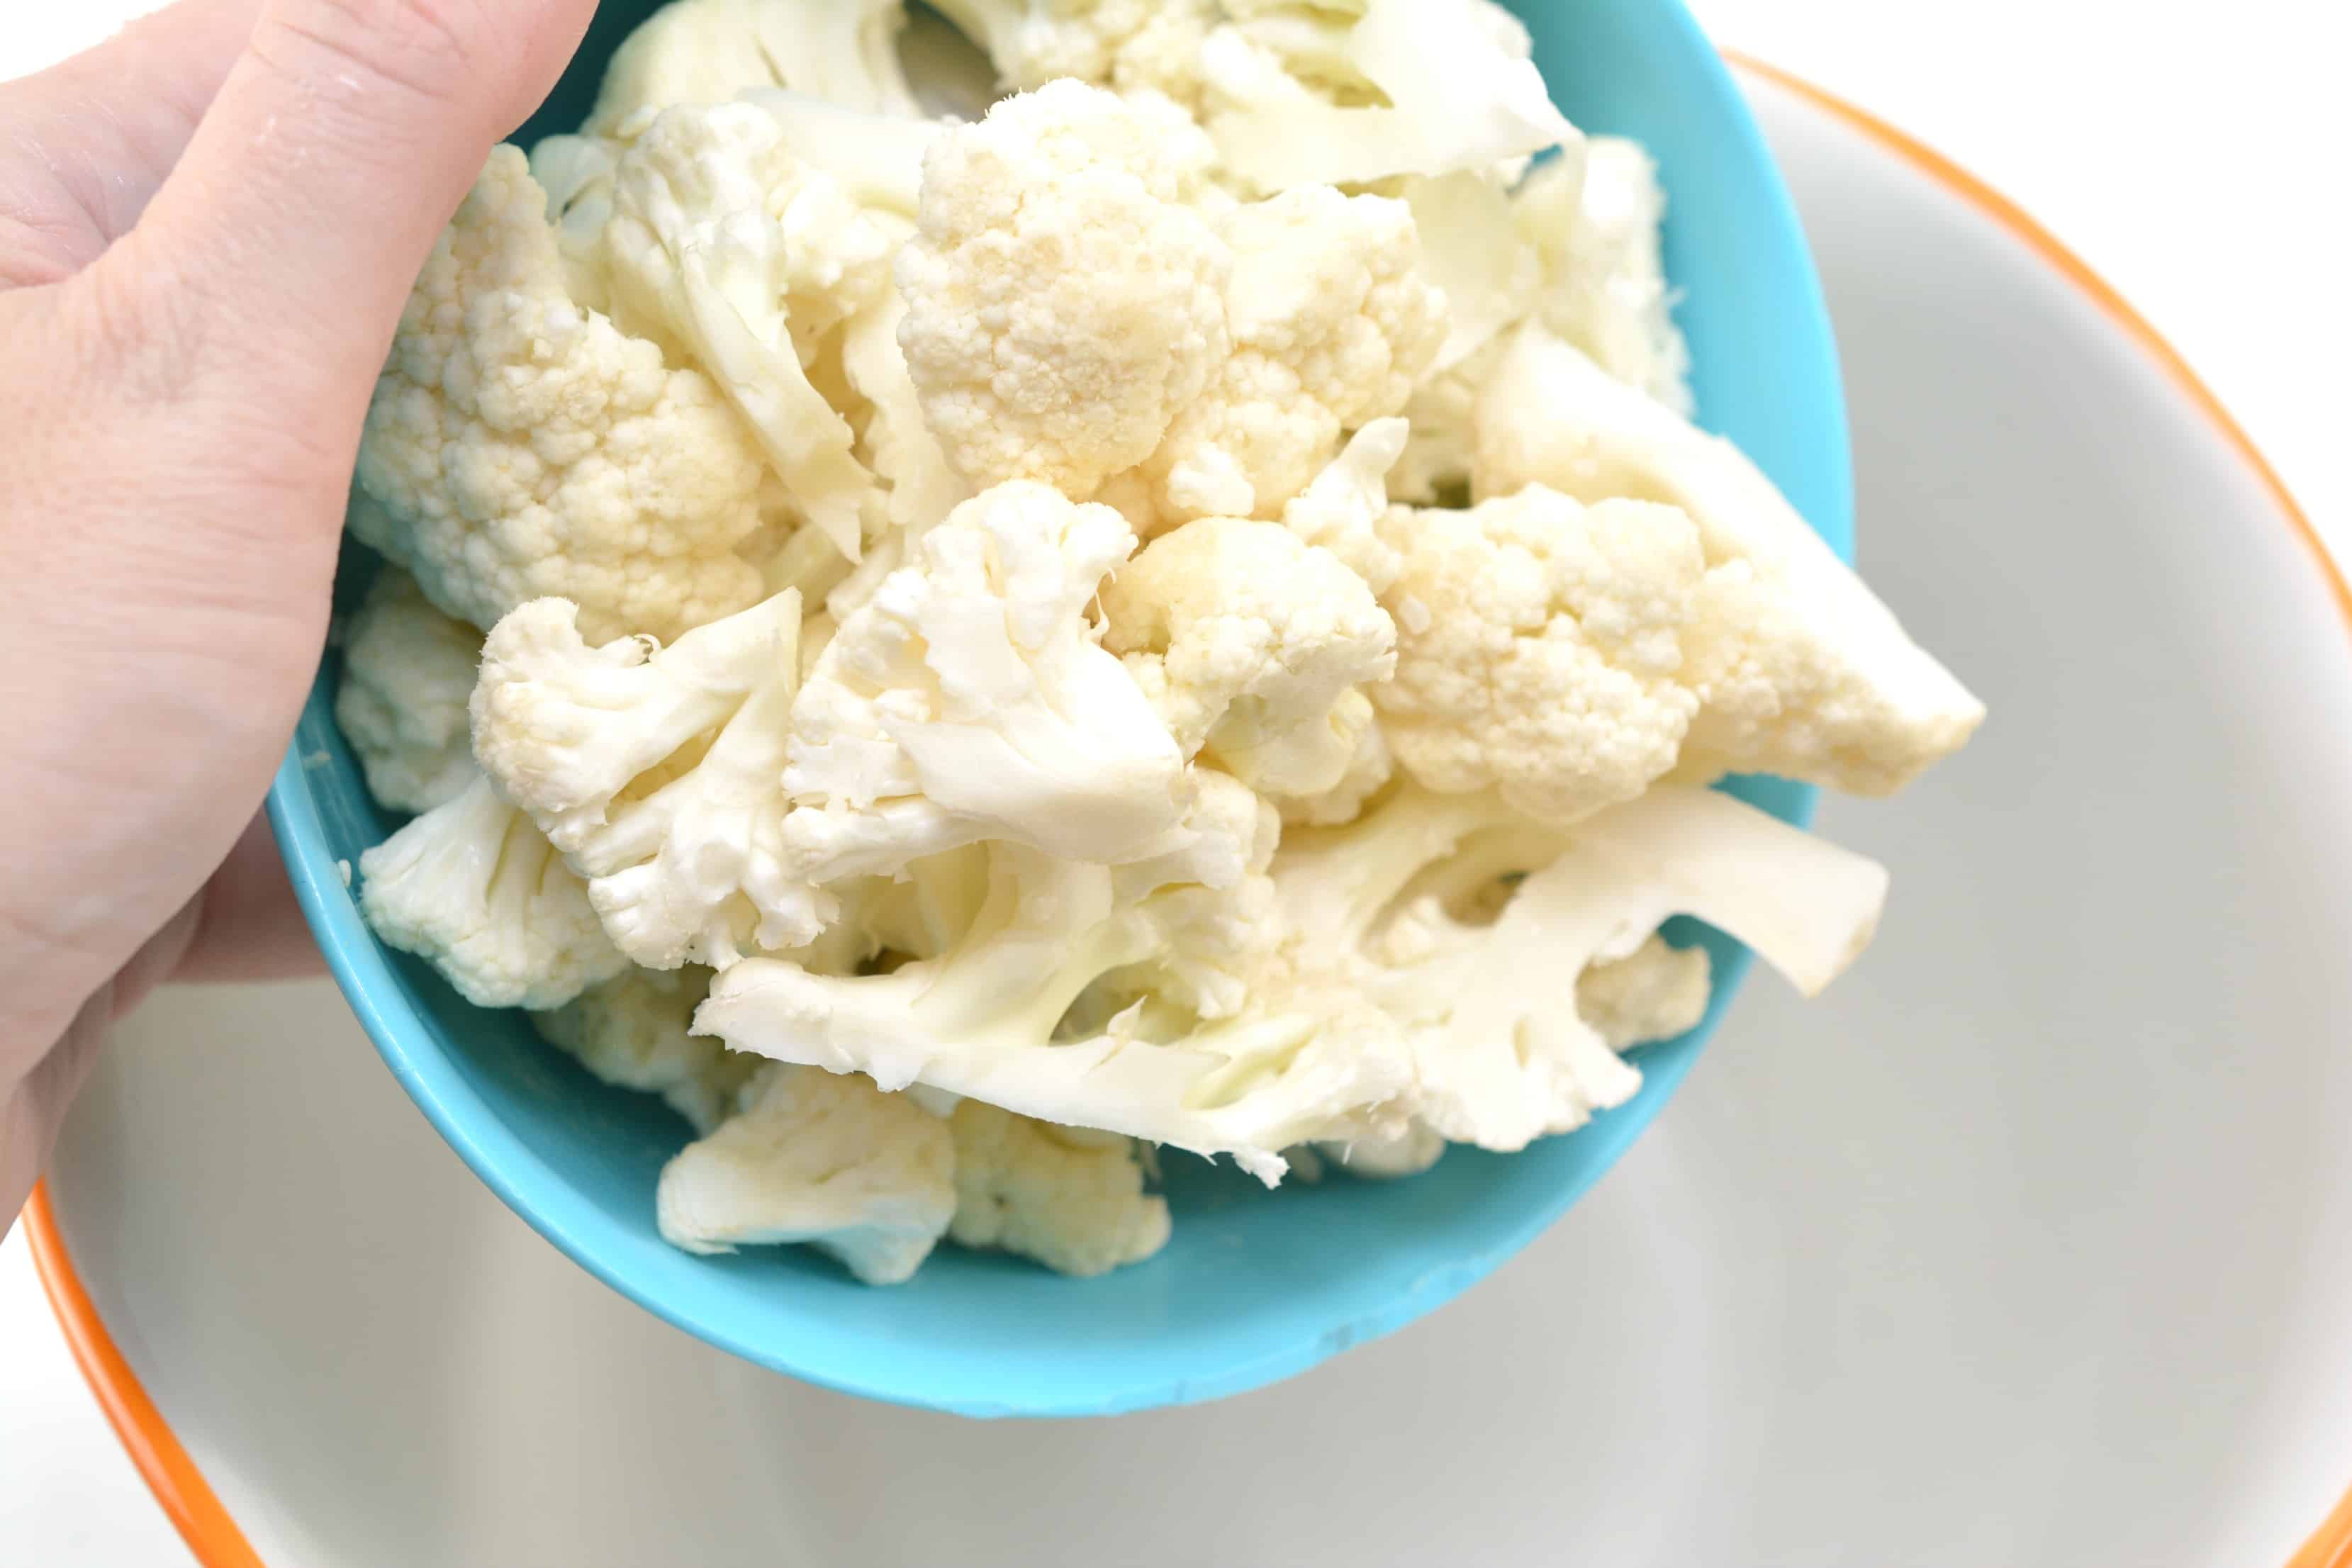 Add cauliflower to a bowl